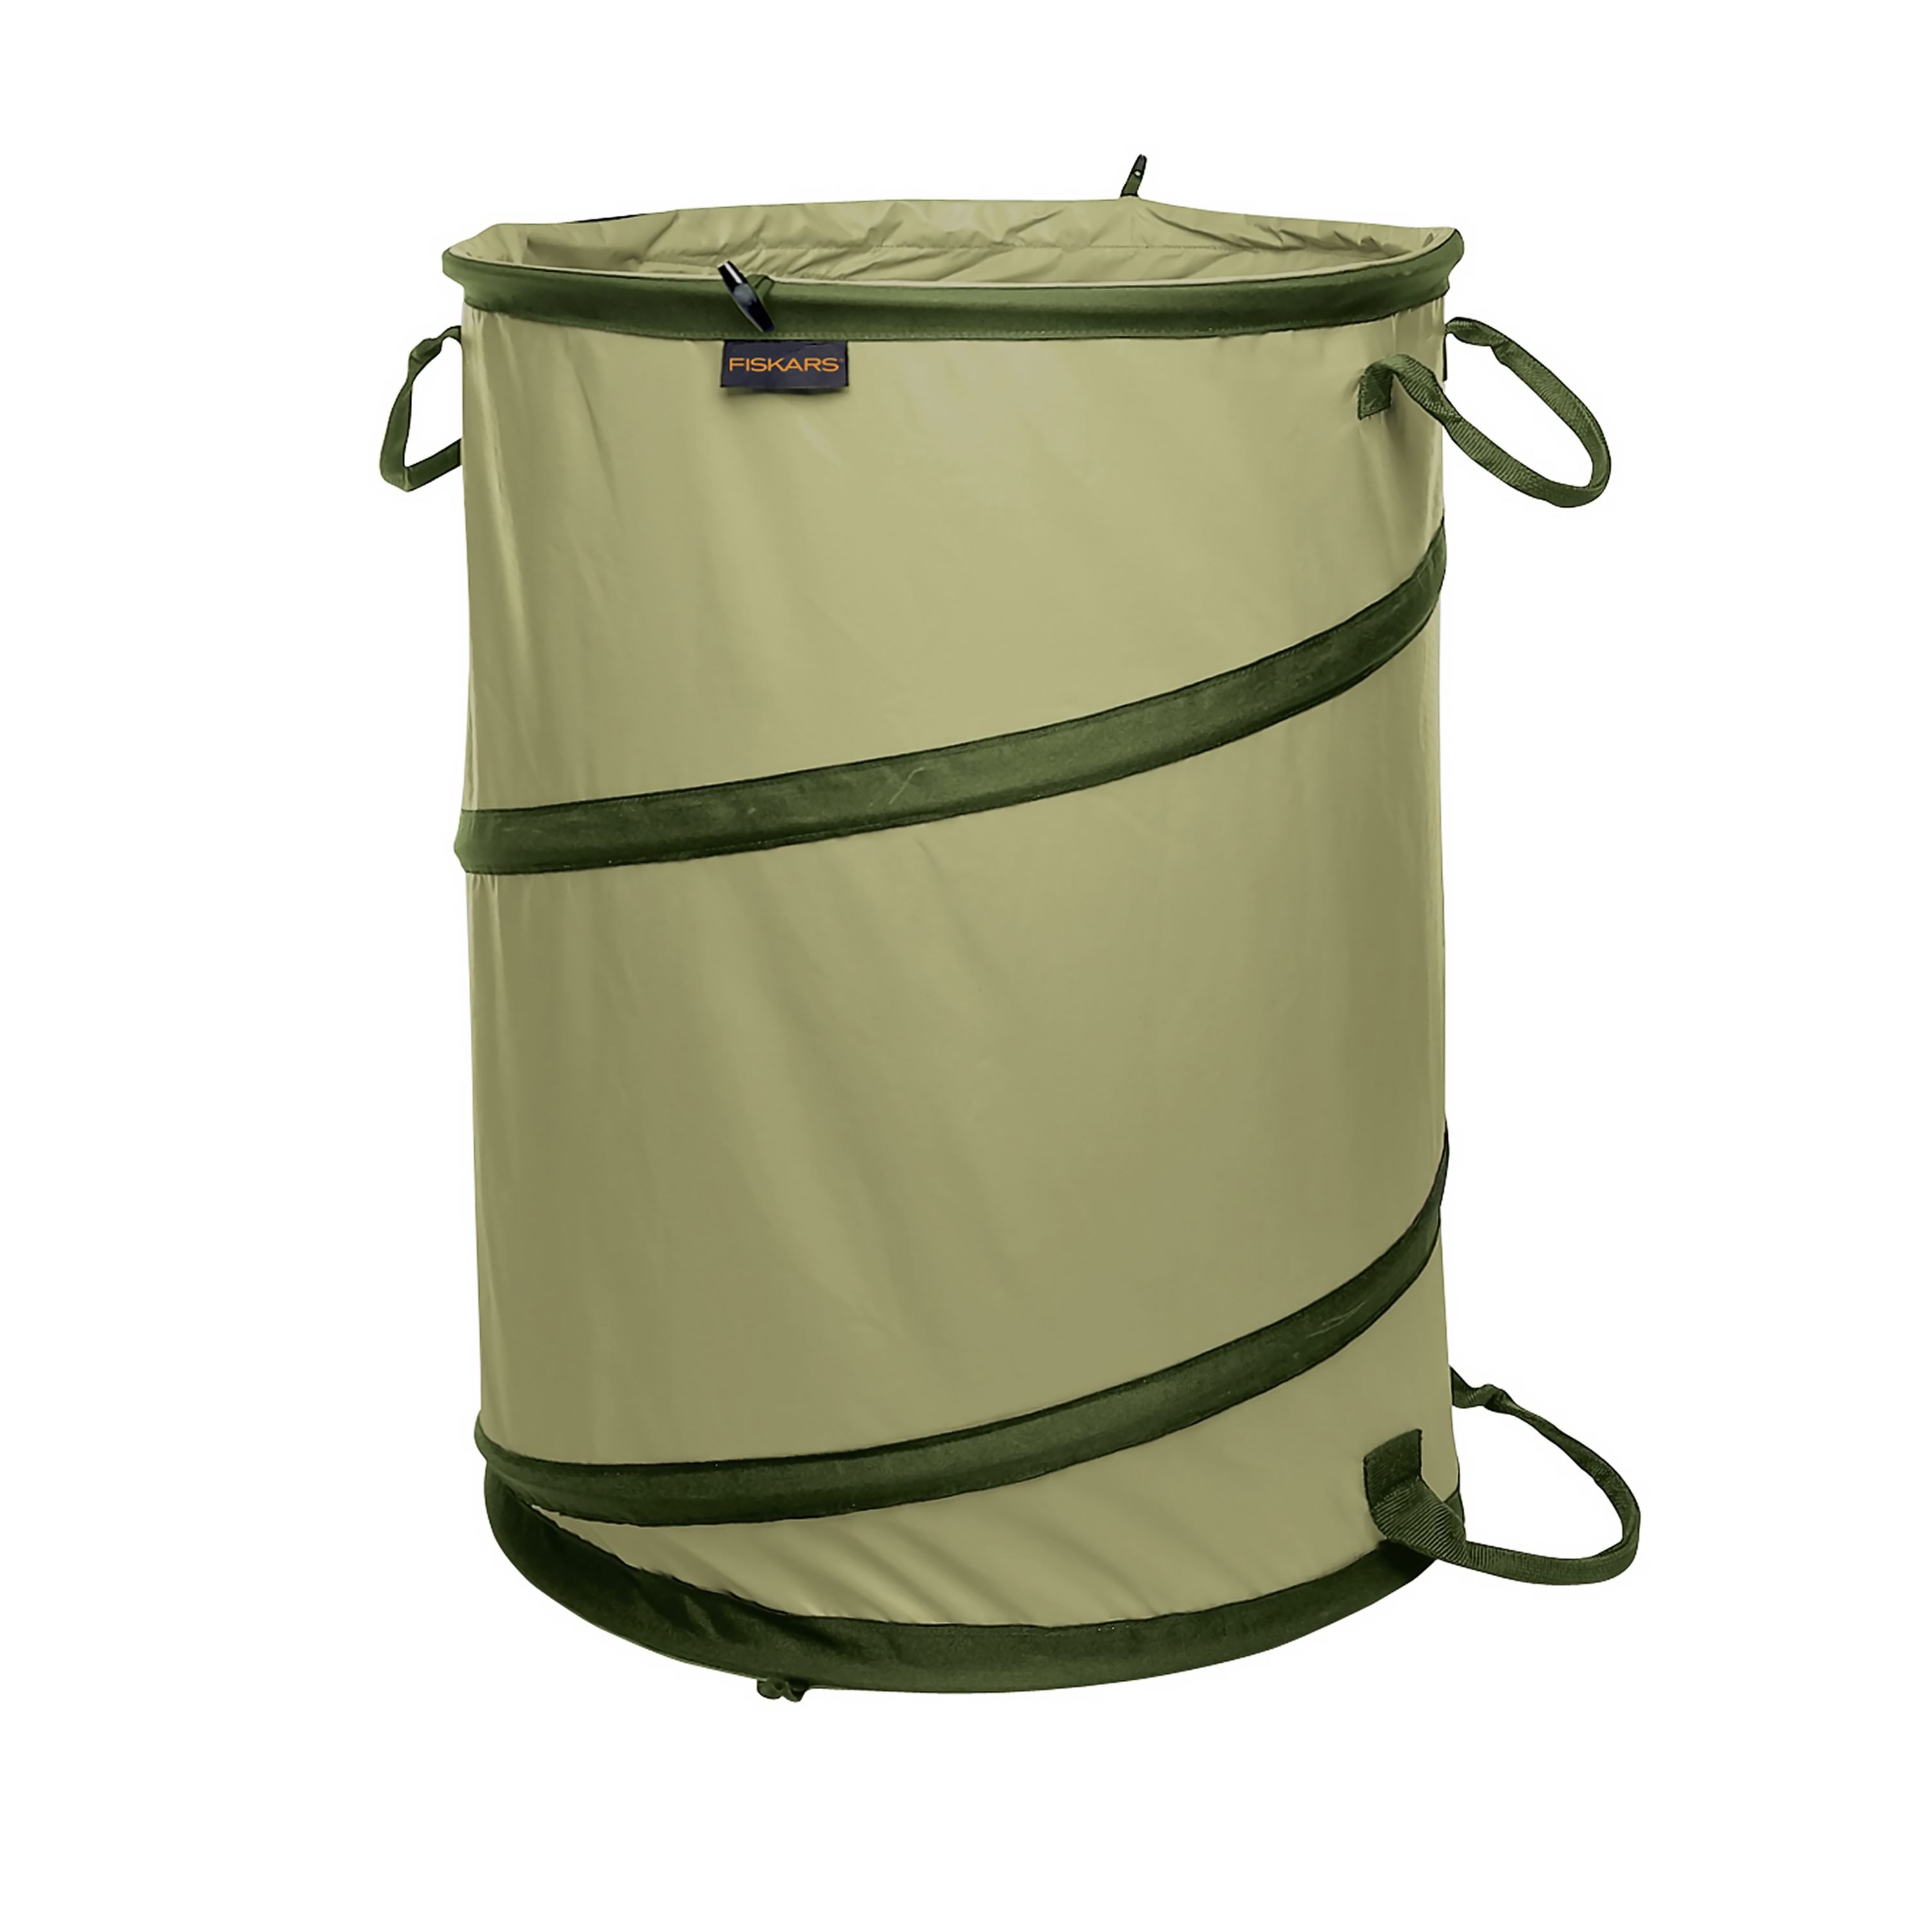 G300 BOS Bag - Garden Utility Bags